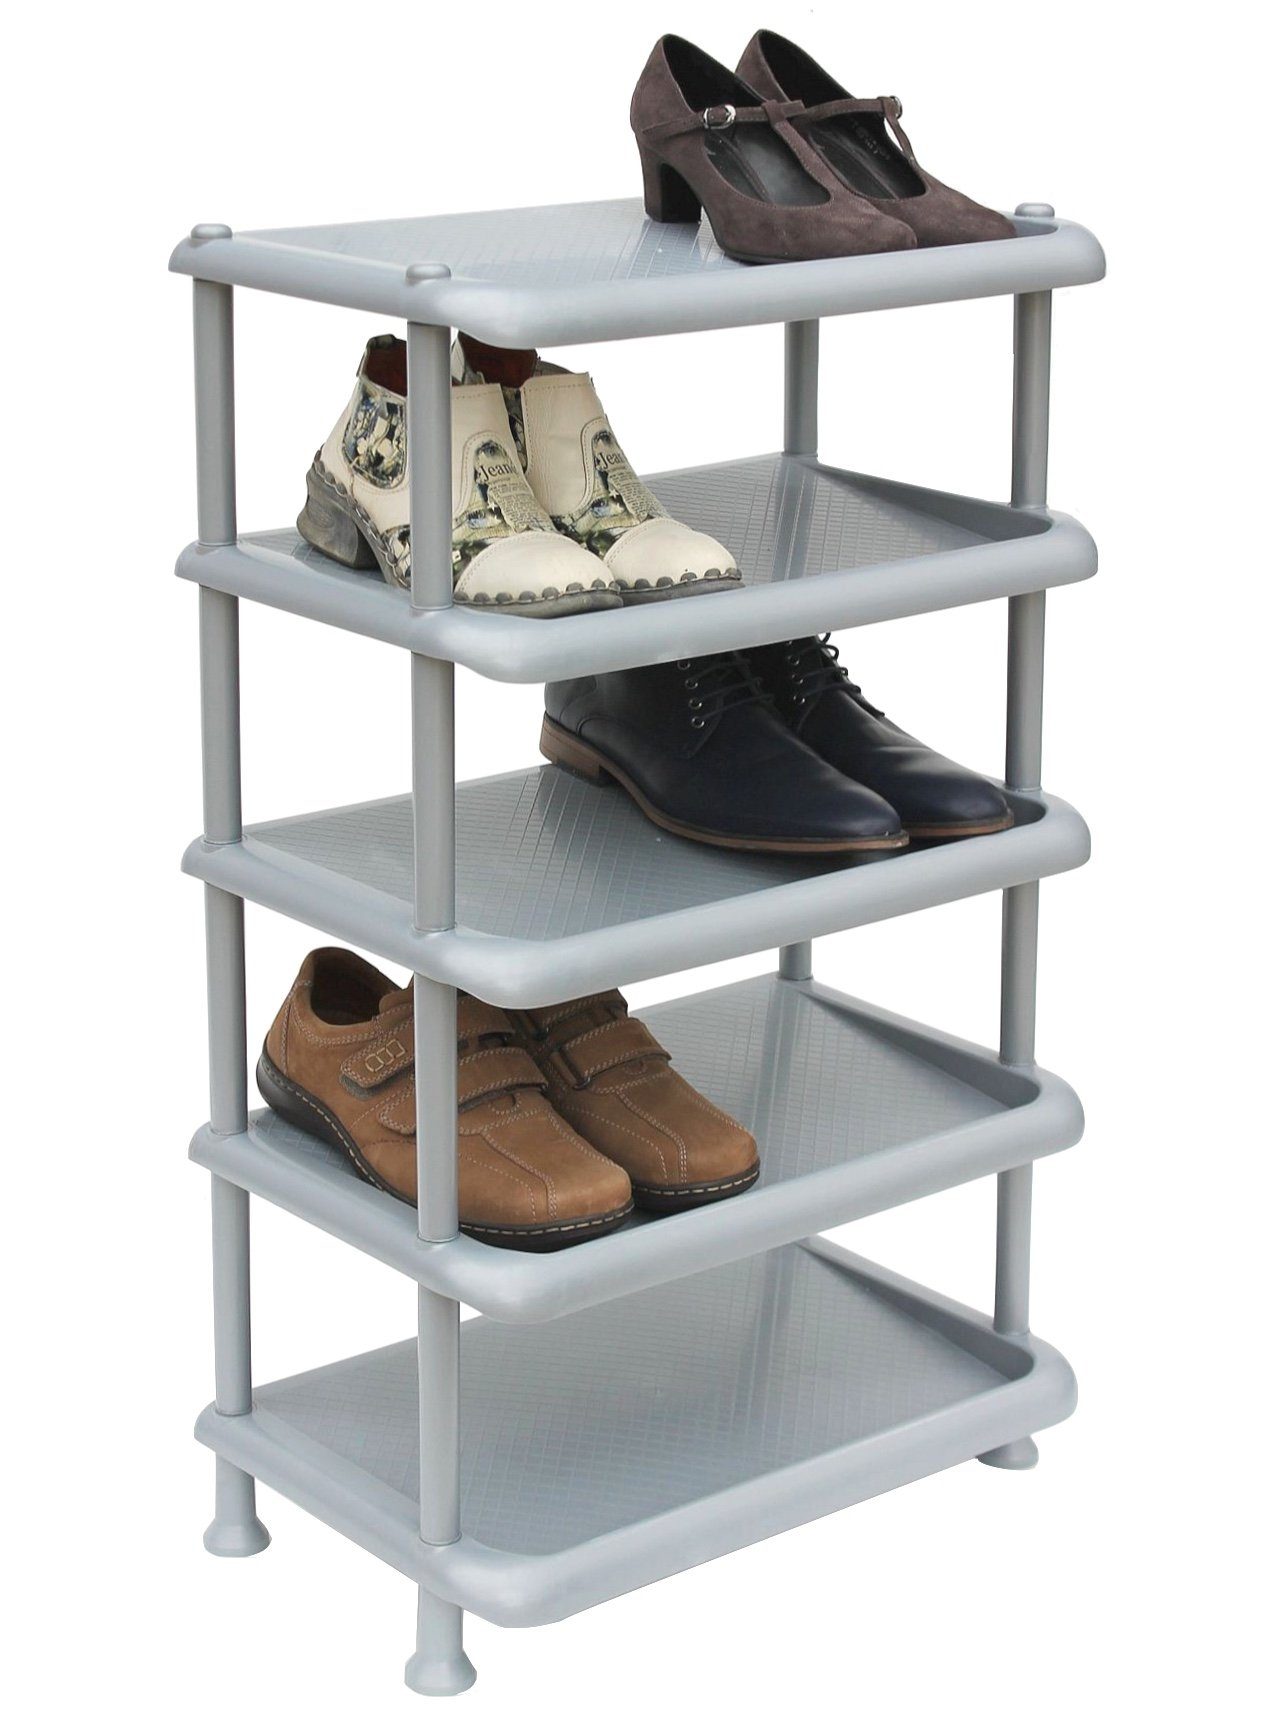 DanDiBo Schuhregal Schuhregal Kunststoff 93901 Stapelbar Schuhablage Offen Schuhständer mit 5 Ebenen Grau Schuhschrank